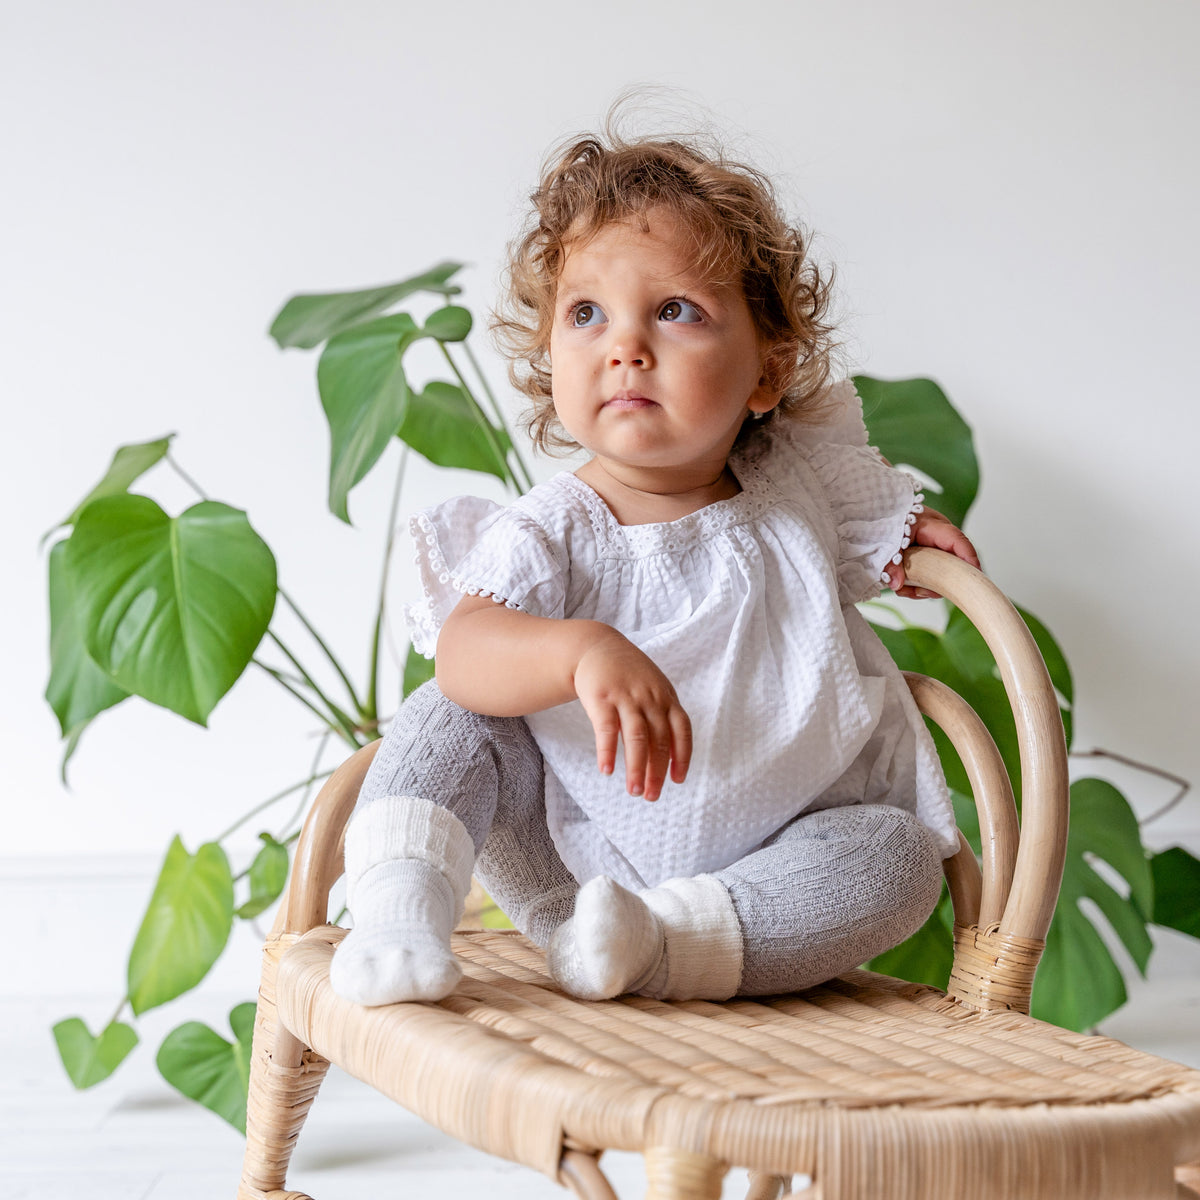 Cosy Stay-On Non-Slip Baby Socks in Sparkle Stripe